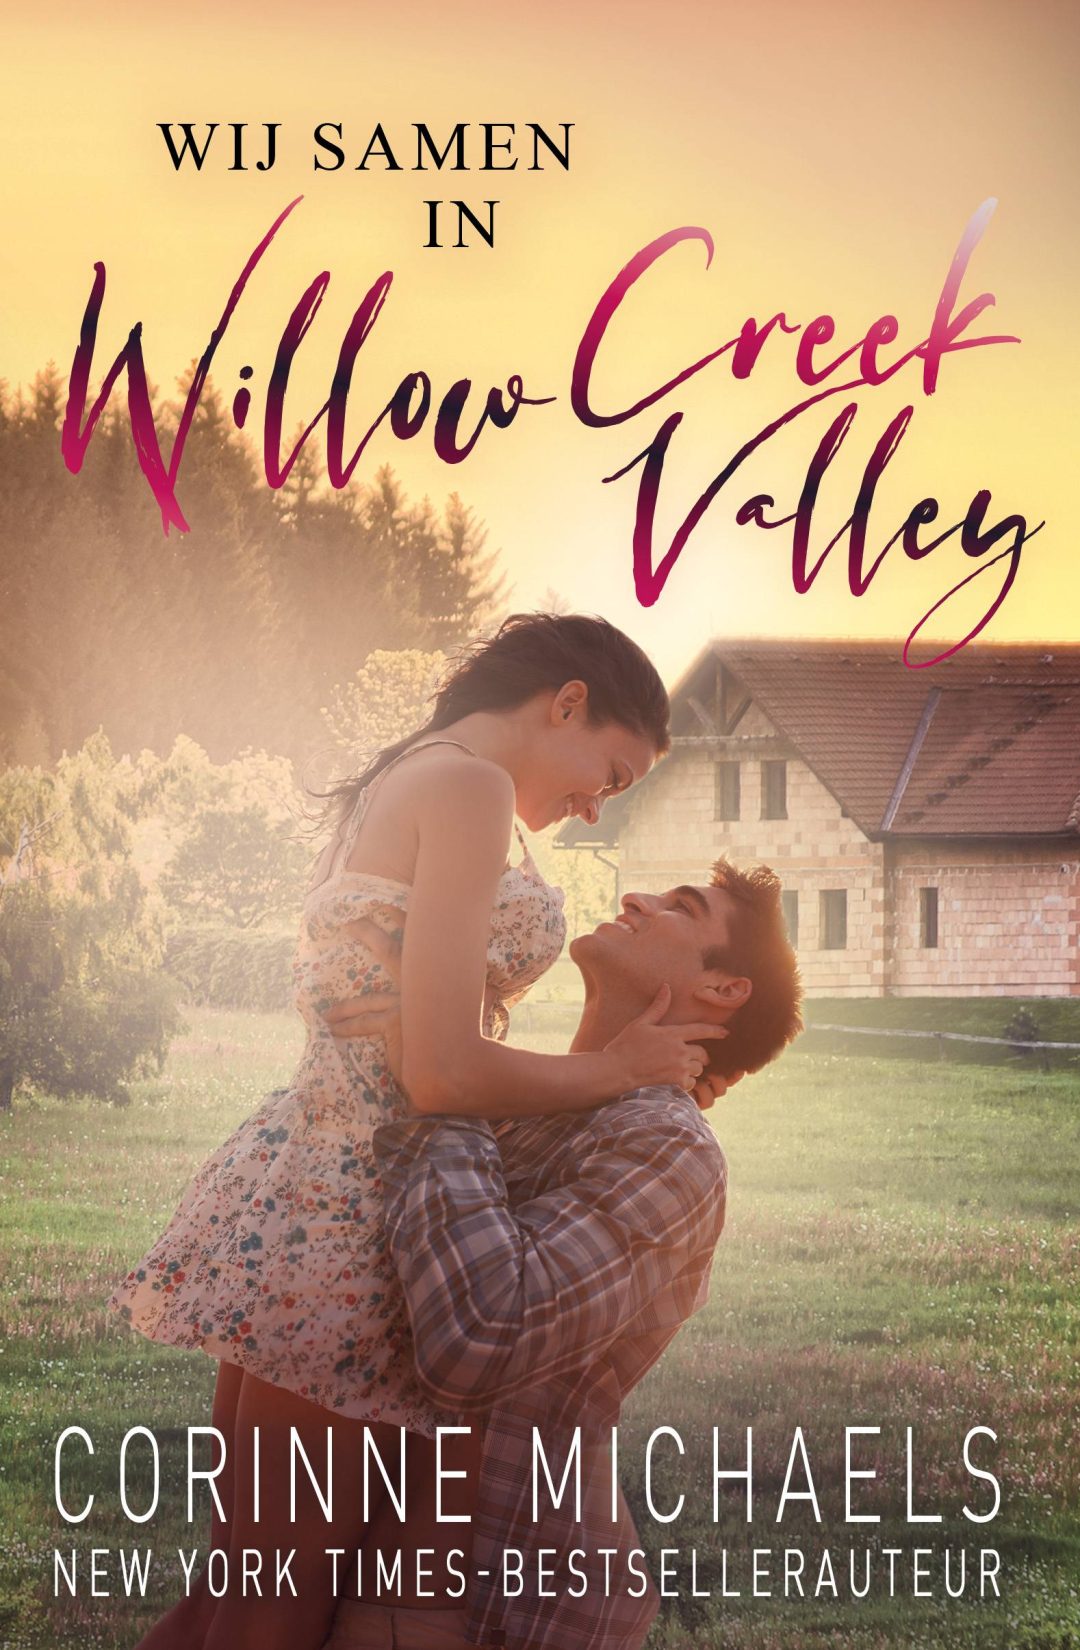 Wij samen in Willow Creek Valley